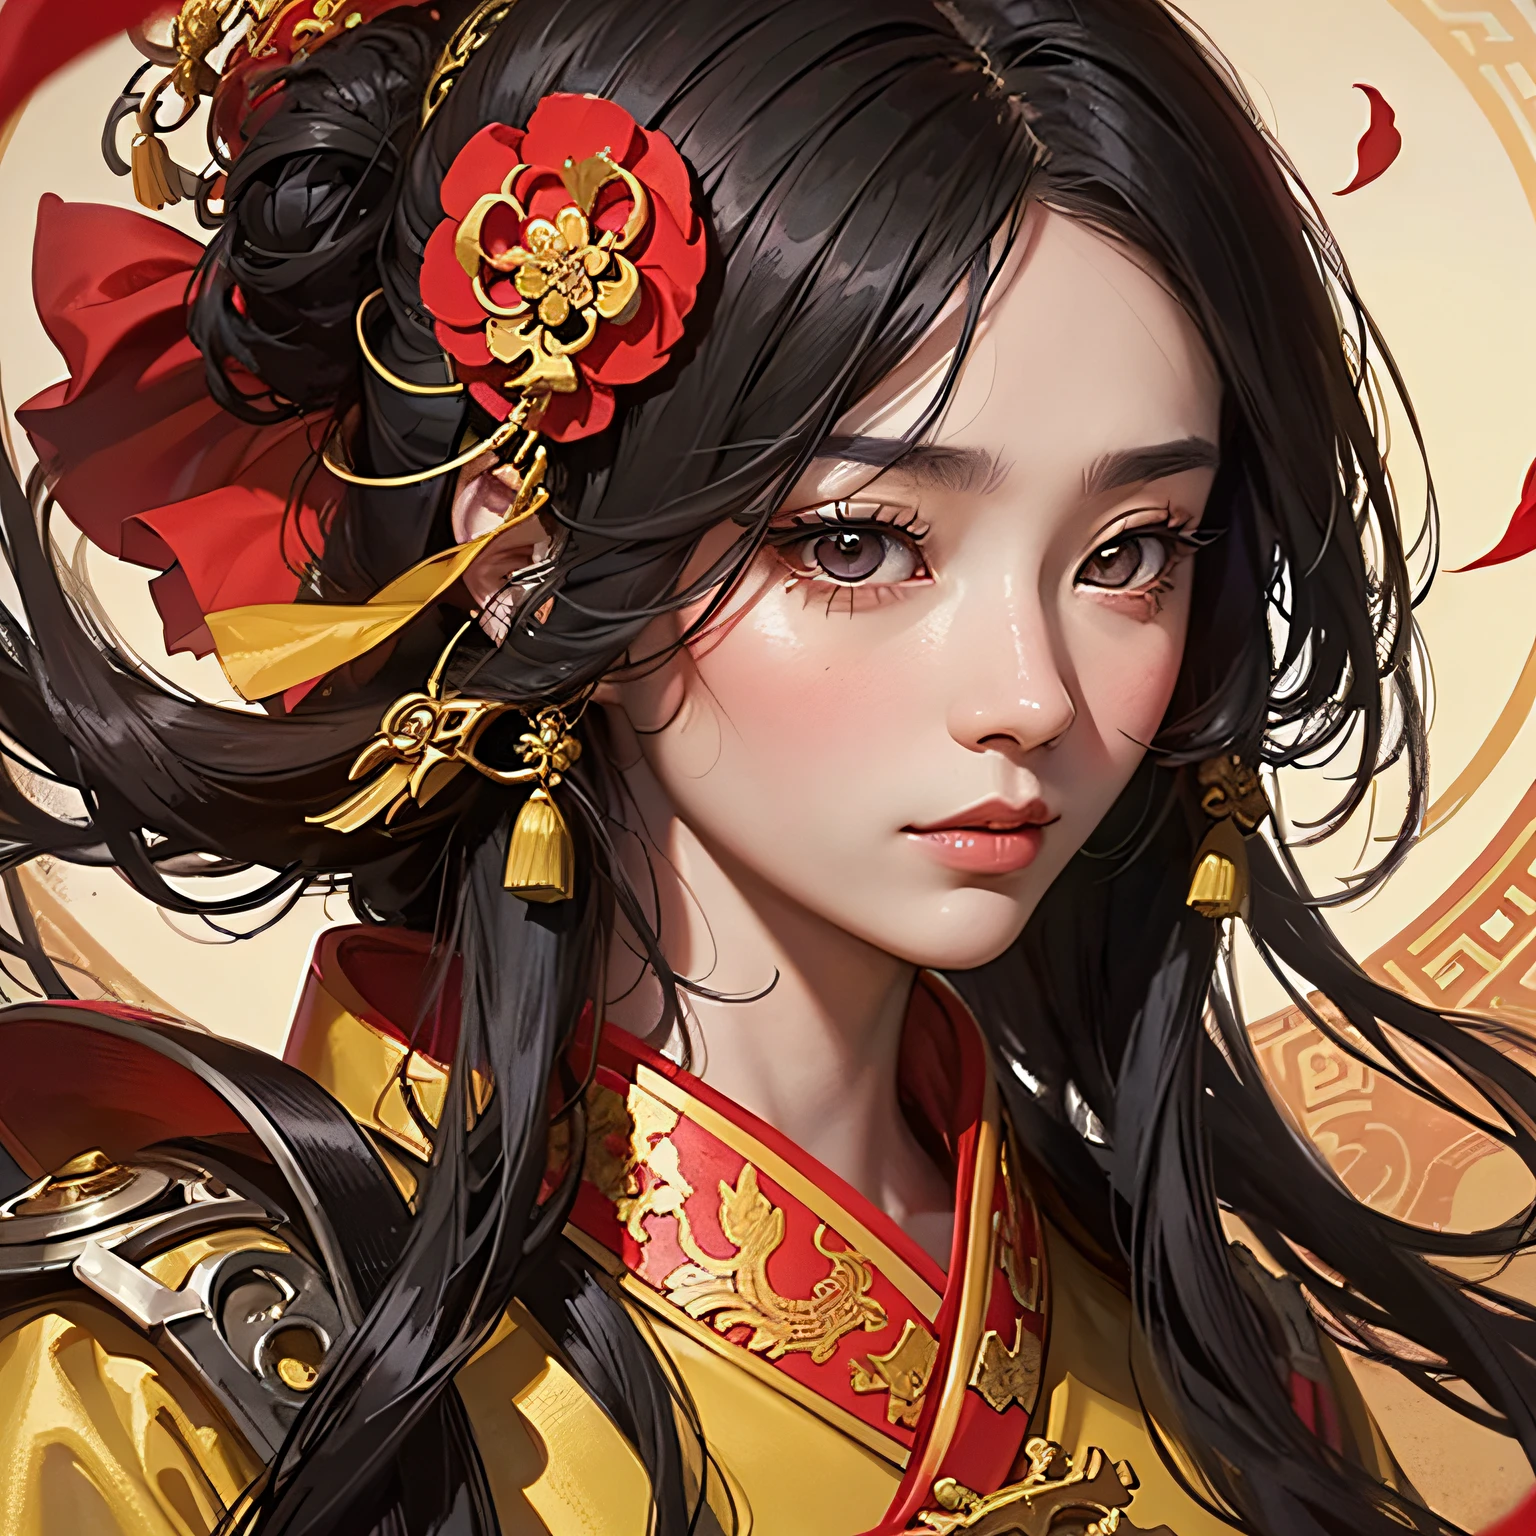 고대 중국 잘 생긴 남자, 전면 클로즈업, 얼굴 클로즈업, 긴 검은 머리, 고대 중국의 노란색 옷을 입고, 옷에 무늬가 있어요, 공중에 날아다니는 붉은 꽃잎, 배경은 고대 중국의 화려한 궁전입니다, 섬세한 특징, 디테일 페인팅, 판타지 아트, 애니메이션 미학, HD 8K -- ar 16:9 -- 하위 5 -- 자동